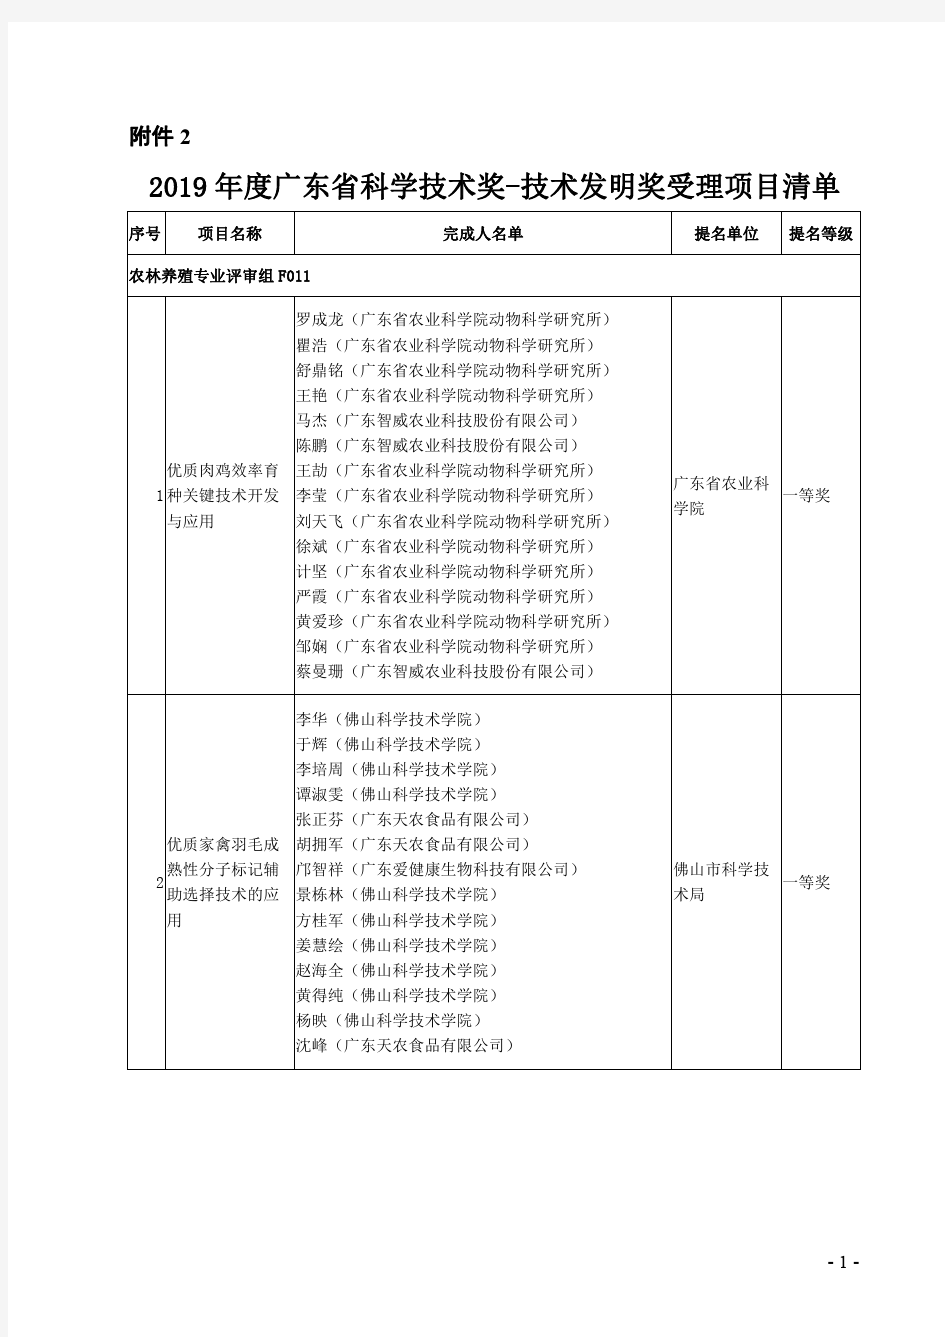 2019年度广东省科学技术奖-技术发明奖受理项目清单